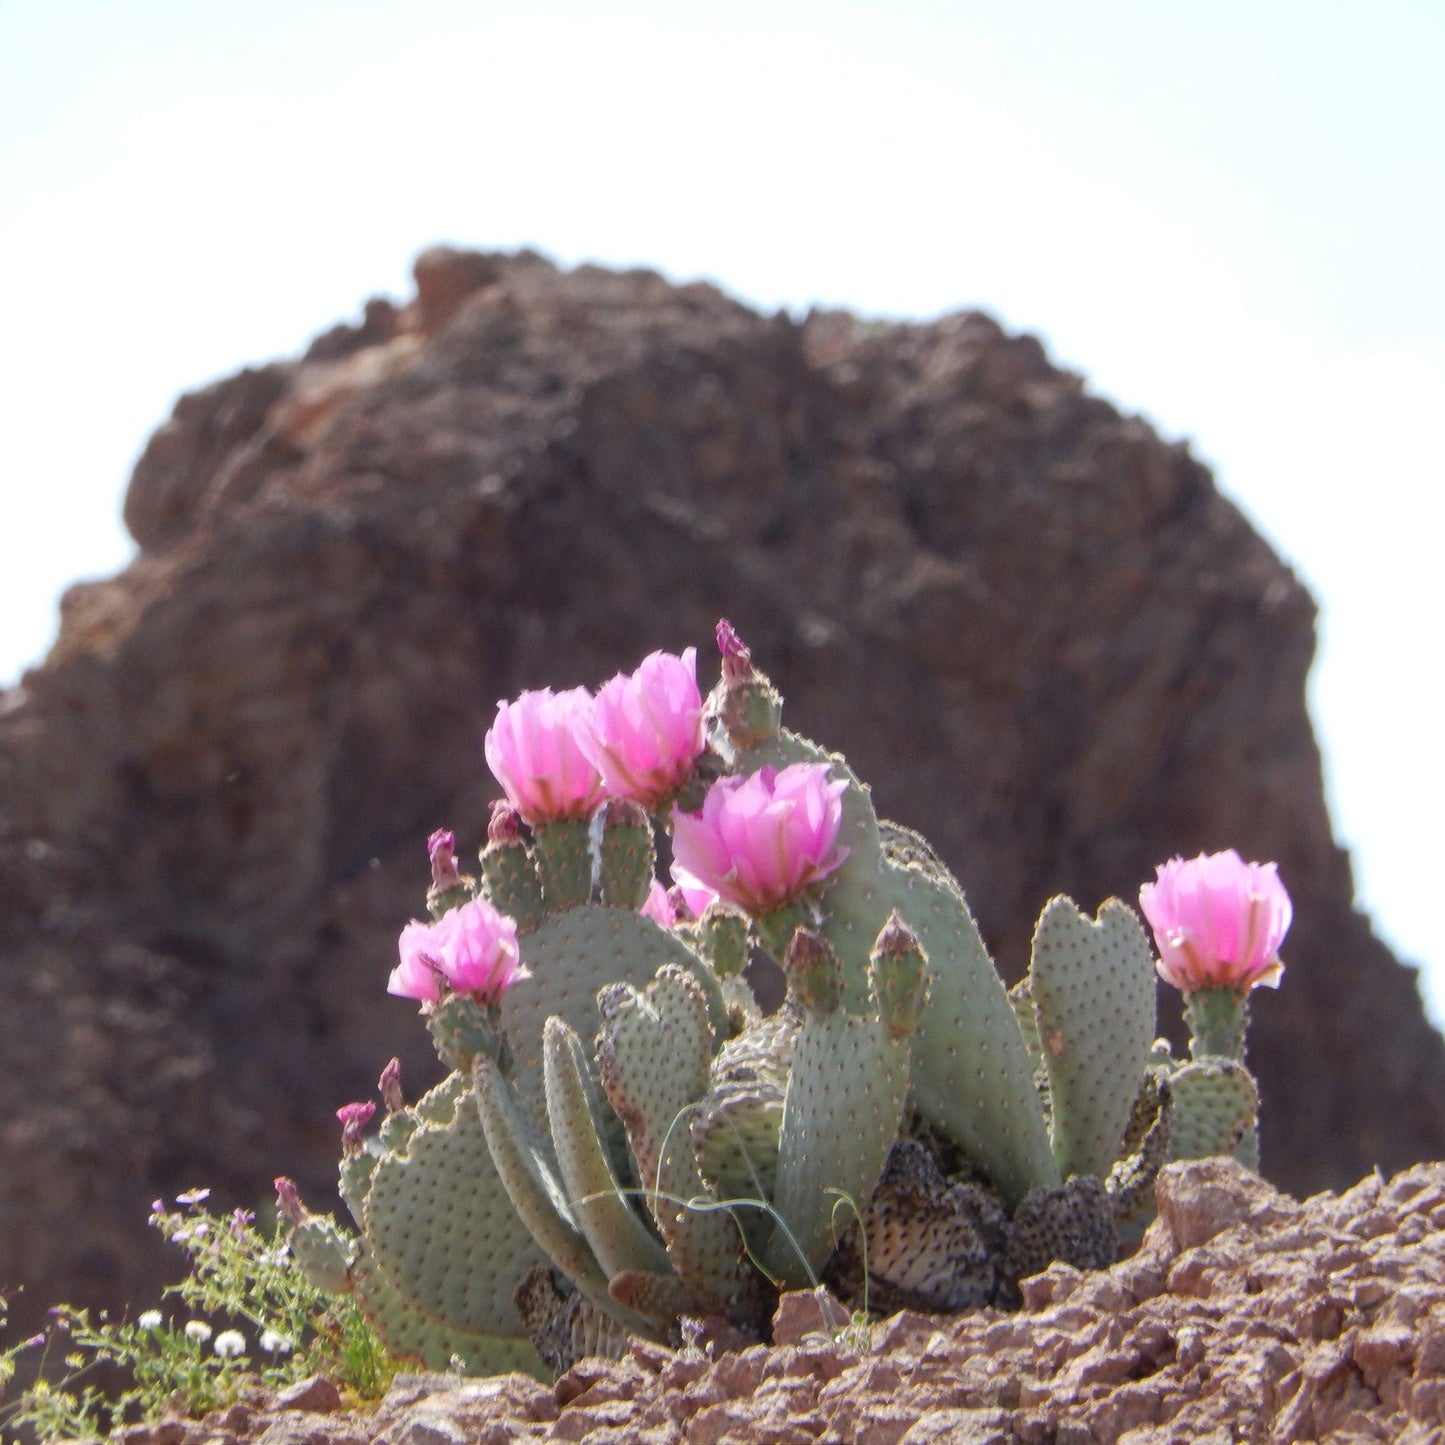 Beavertail Cactus 'Oregon Giant' (Opuntia basilaris) Seeds